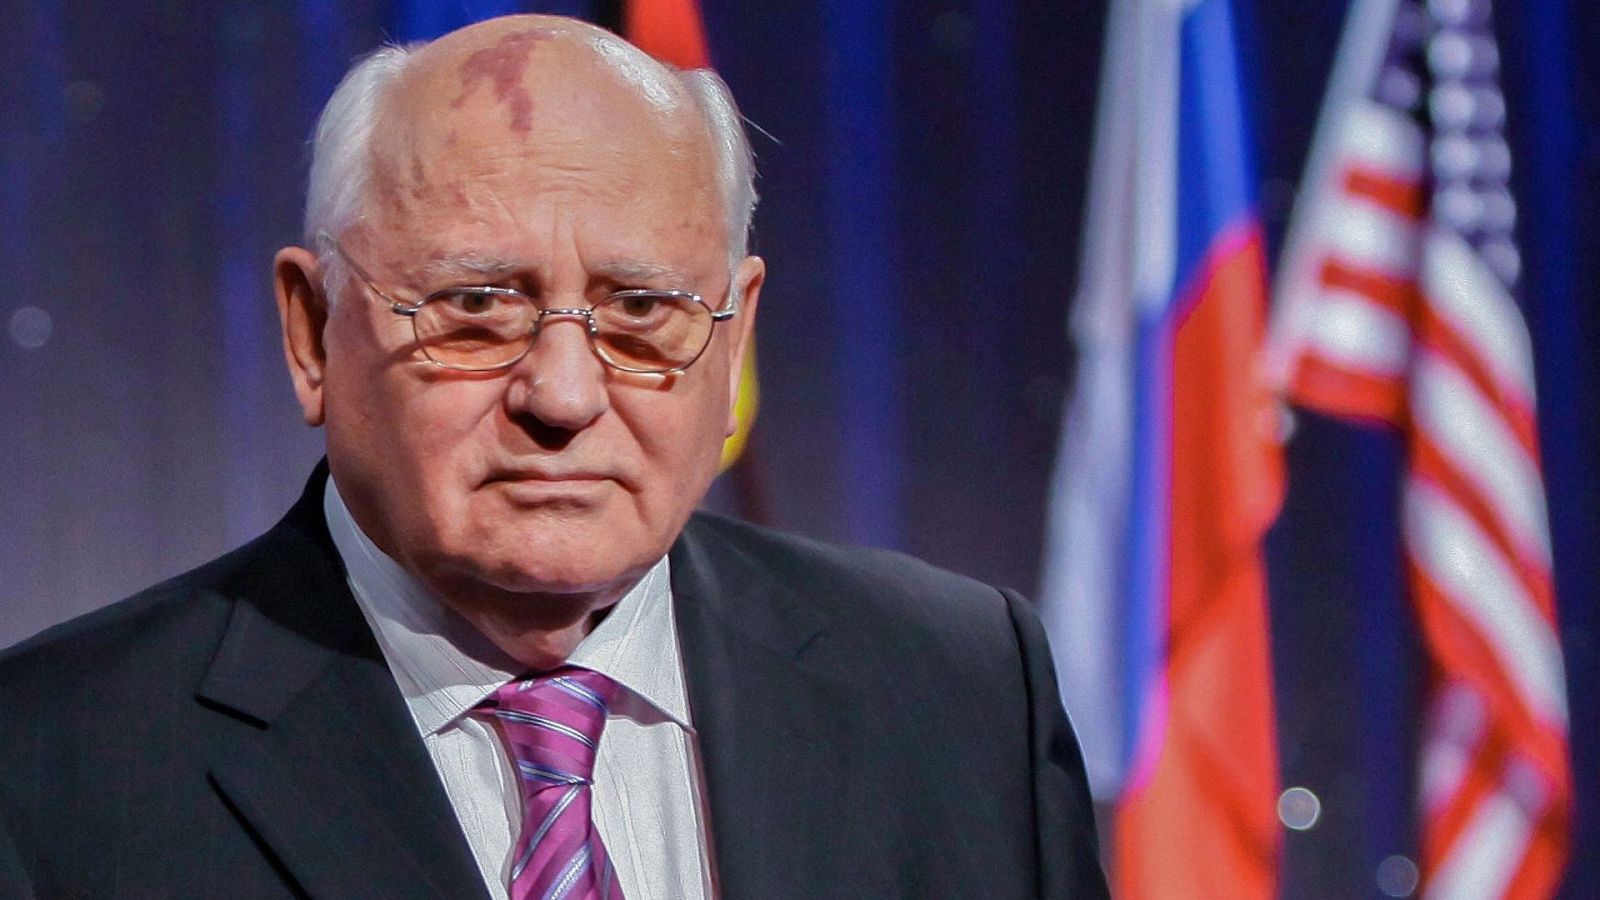 Carmen Claudín (CIDOB): "Occidente ha respondido con total sinceridad a los deseos de Gorbachov" - Ver ahora